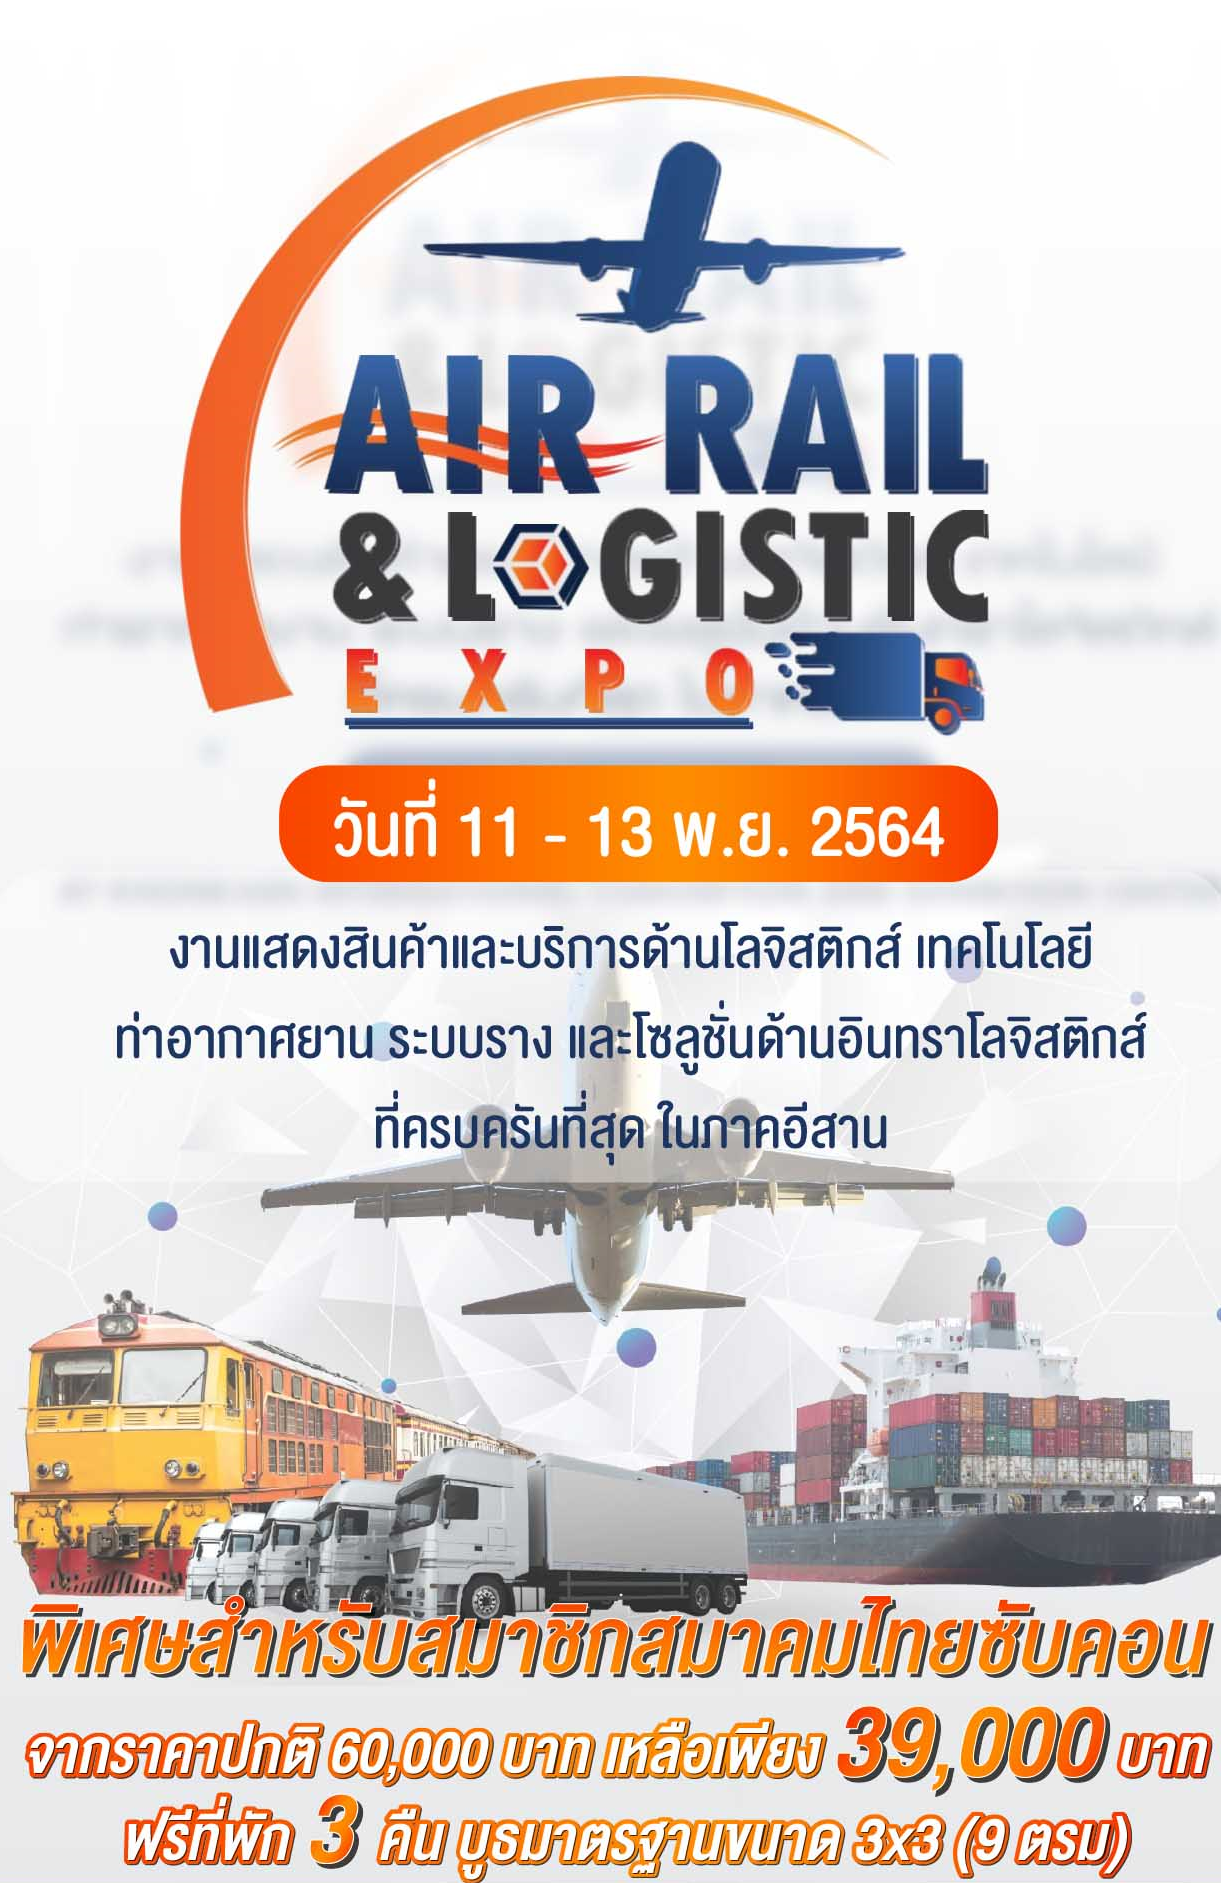 AIR RAIL LOGICTIC EXPO